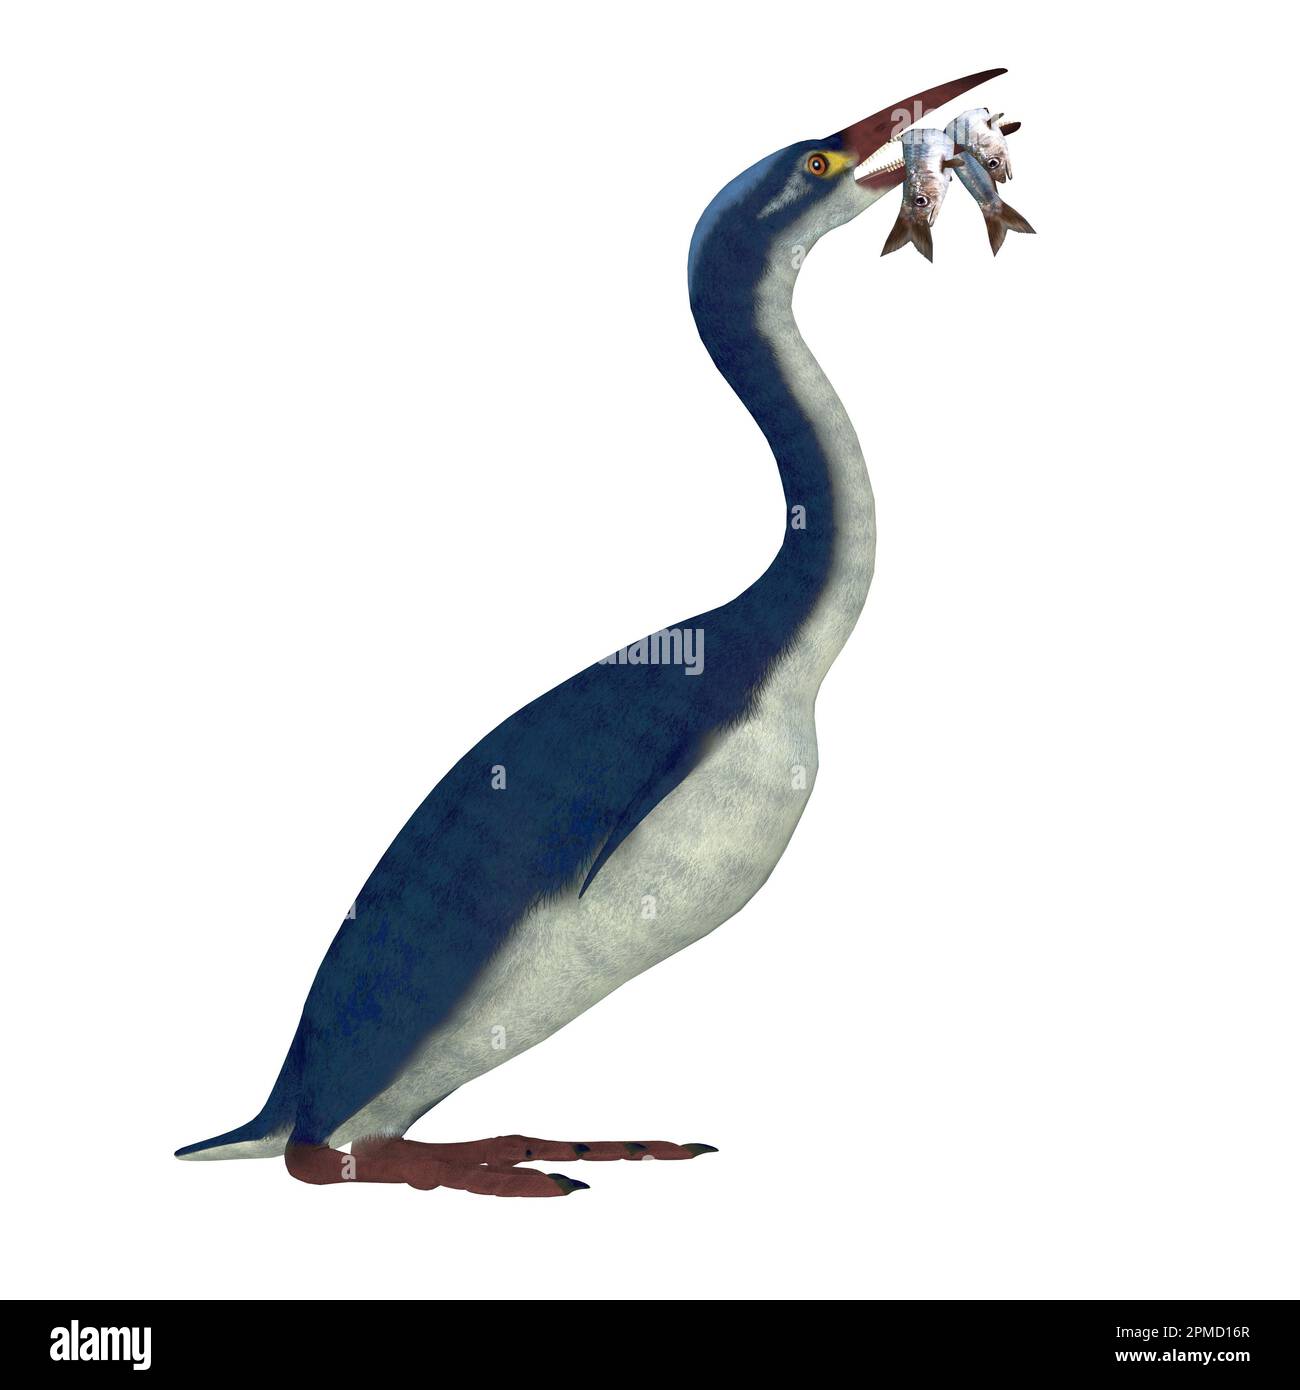 Hesperornis ist eine Gattung der flugunfähigen Wasservögeln, die in der Kreidezeit lebte. Stockfoto